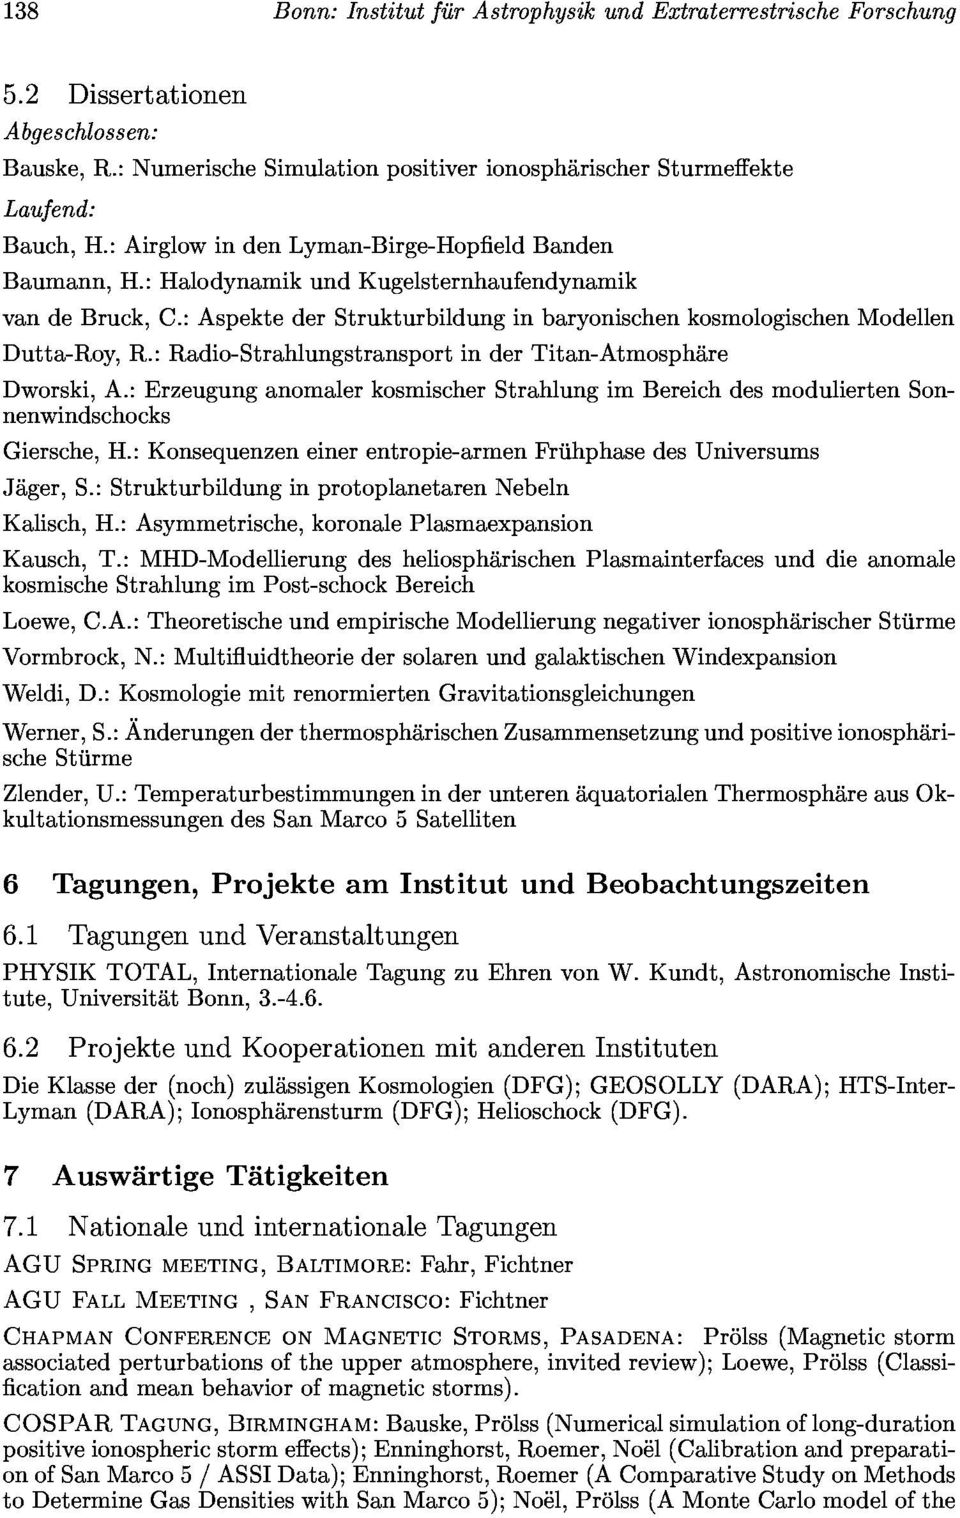 :aspektederstrukturbildunginbaryonischenkosmologischenmodellen Dworski,A.:ErzeugunganomalerkosmischerStrahlungimBereichdesmoduliertenSonnenwindschocks Giersche,H.